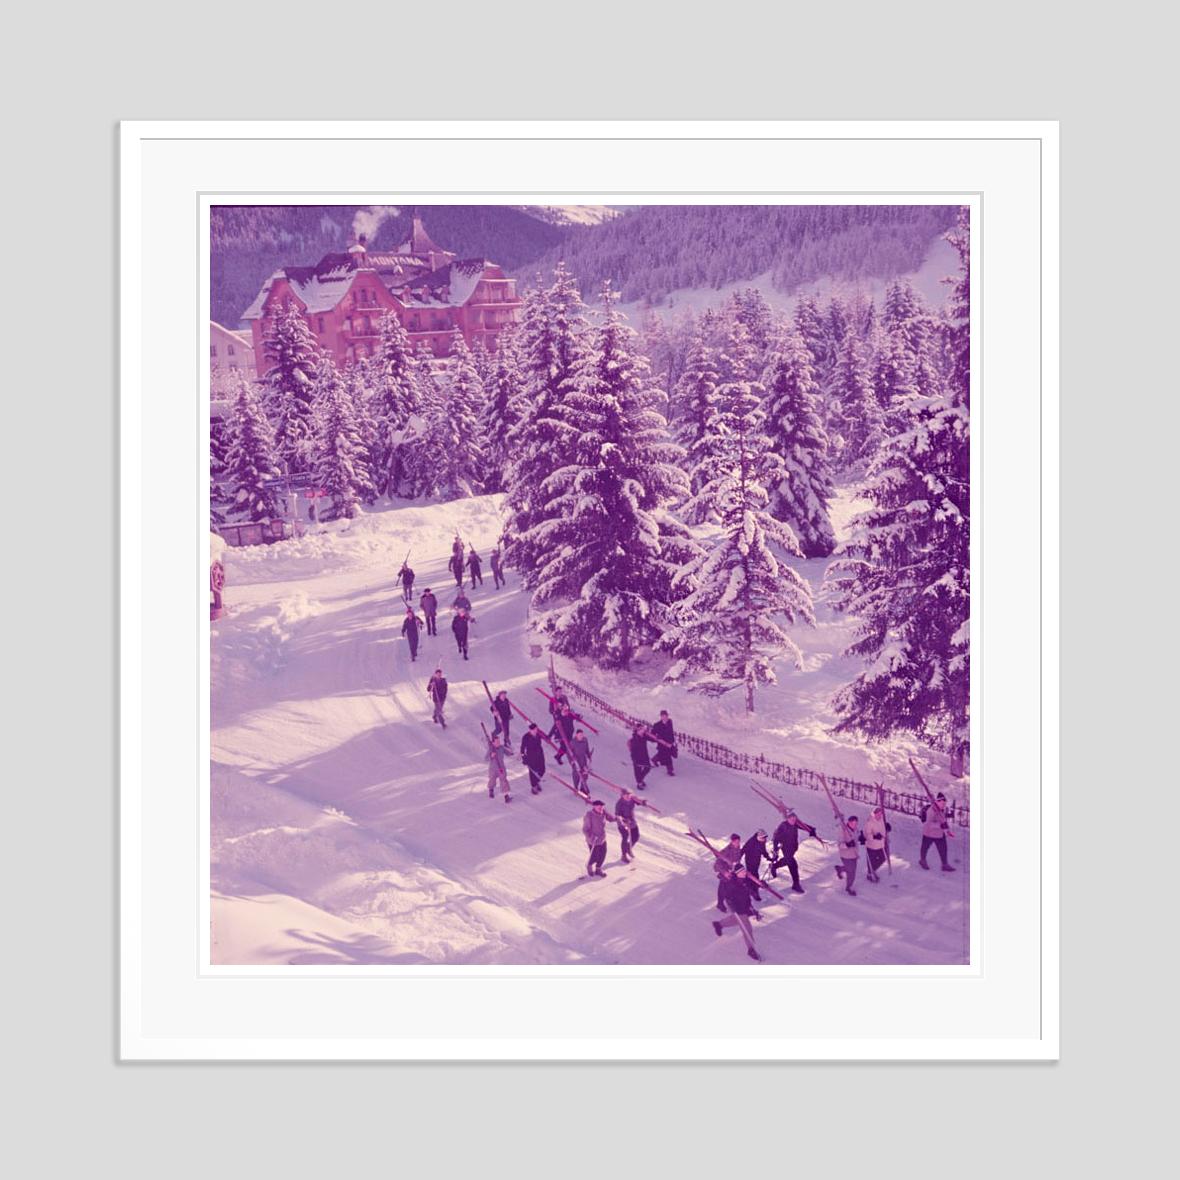 Aufbruch

1954

Eine Gruppe von Skifahrern geht durch die Straße auf dem Weg zu den Skipisten, Klosters, Schweiz, 1954.

von Toni Frissell

30 x 30